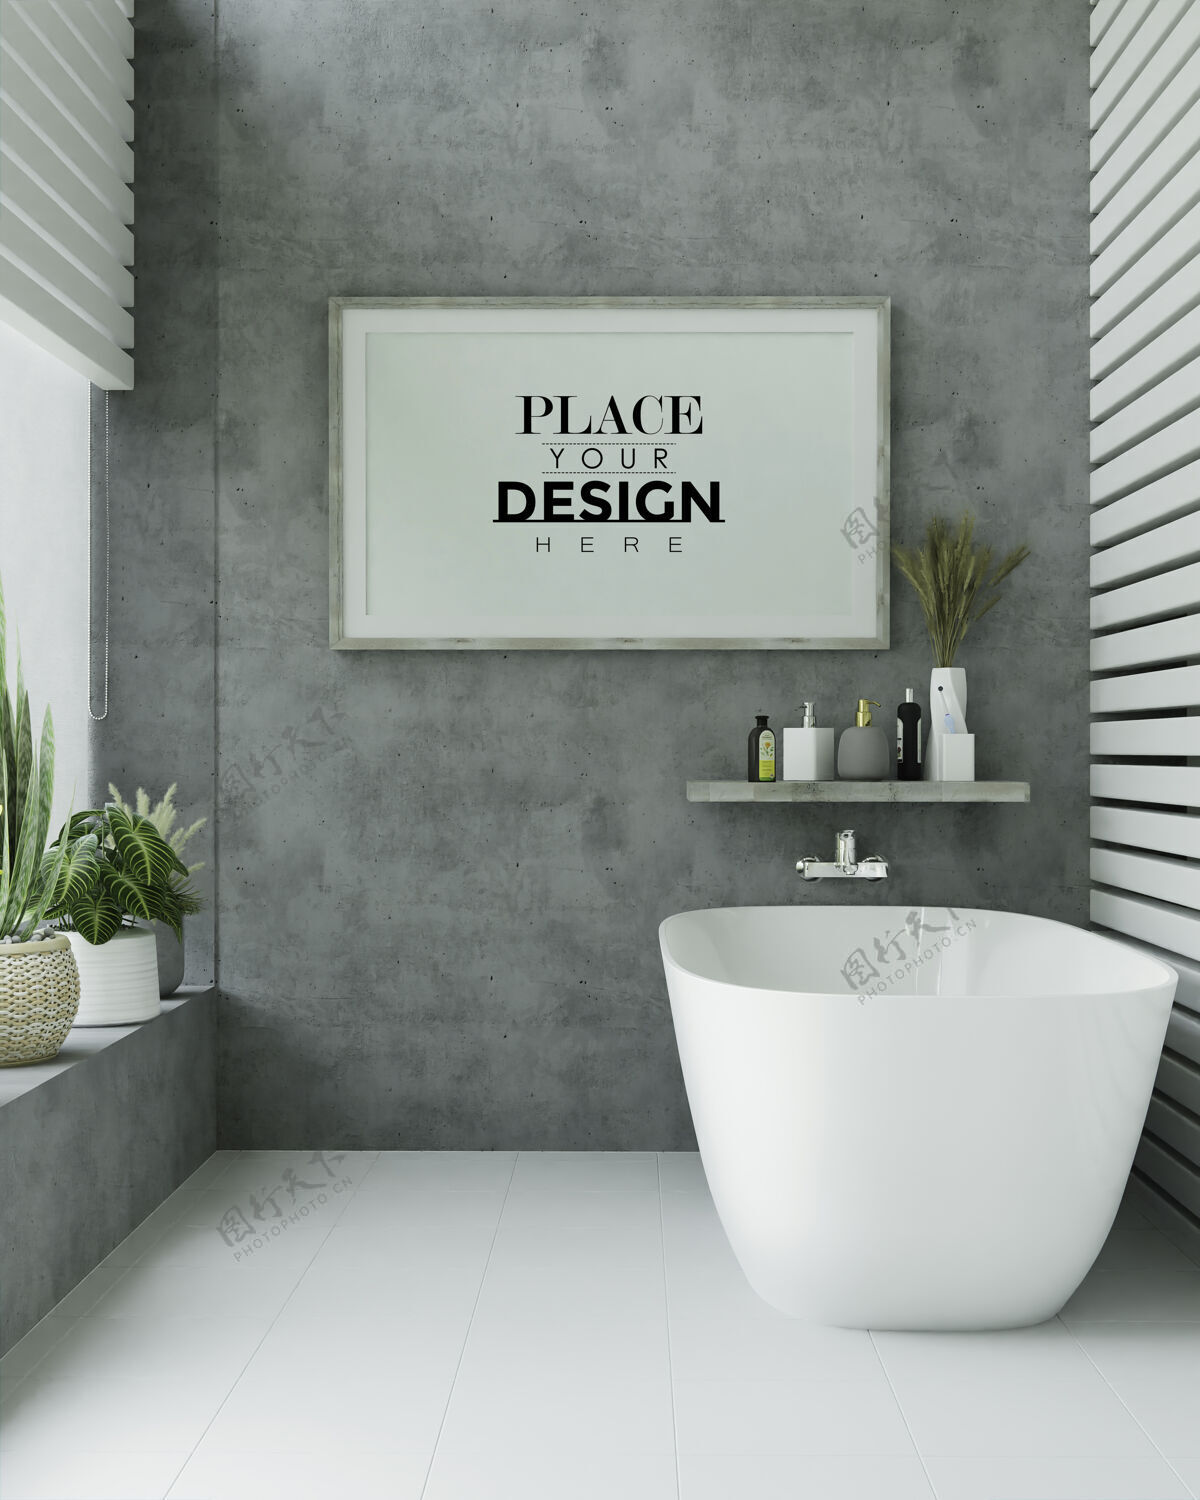 框架浴室内部海报框架模型房子浴室家具